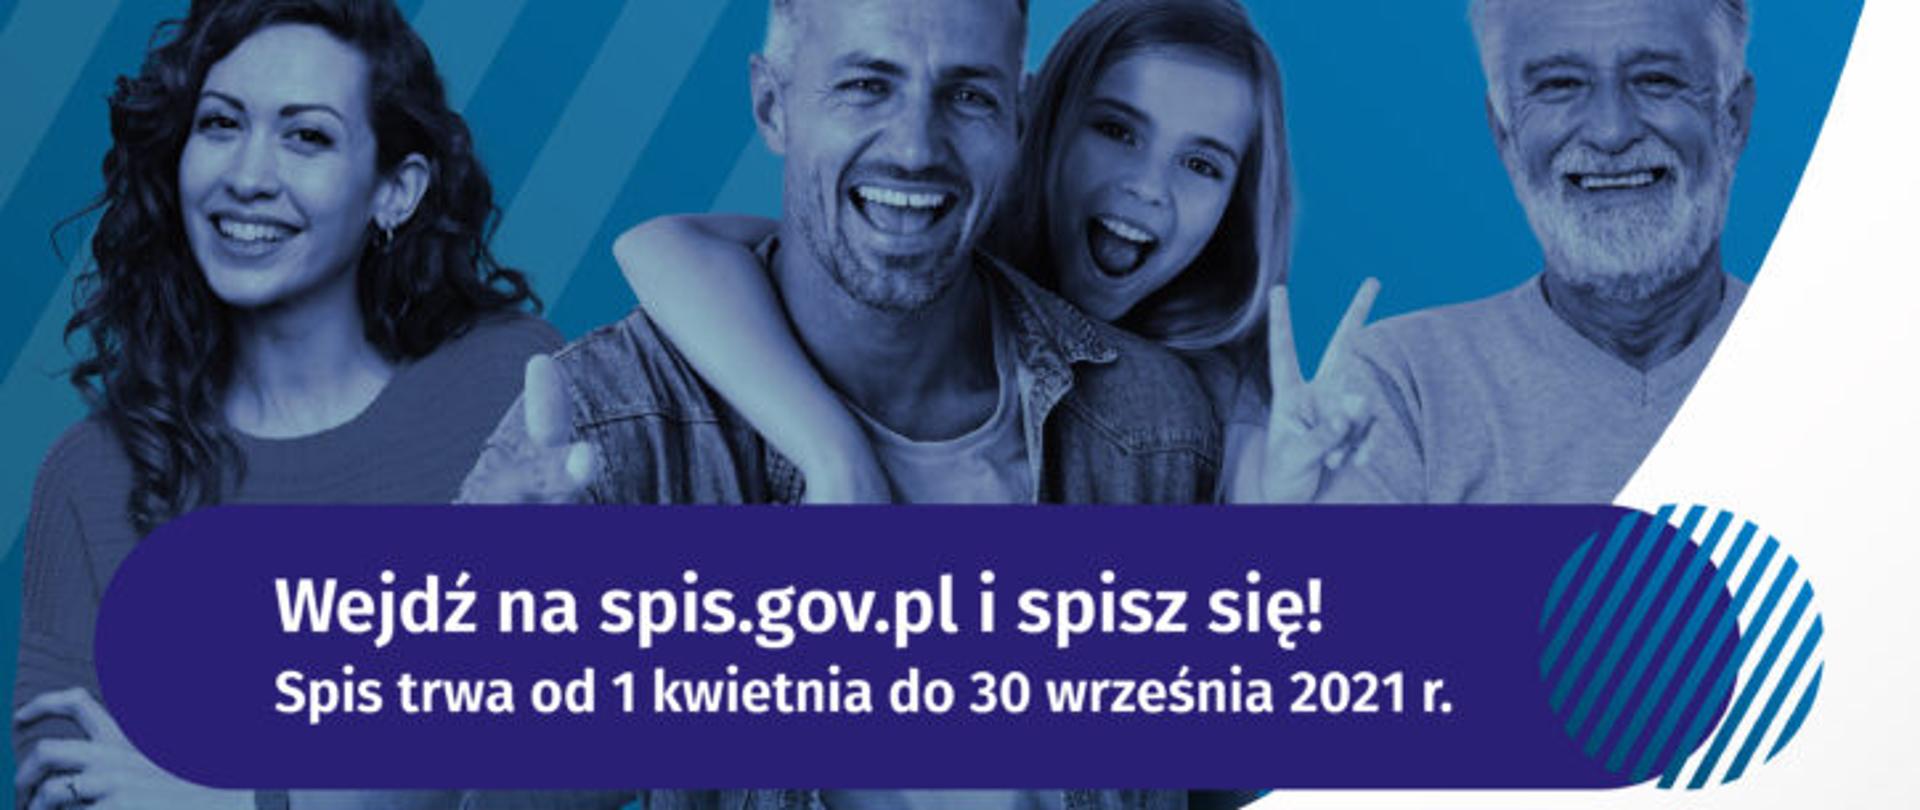 Plakat informujący o narodowym spisie powszechnym. Na plakacie informacja: Wejdź na spis.gov.pl i spisz się. Spis trwa od 1 kwietnia do 30 września 2021 roku.